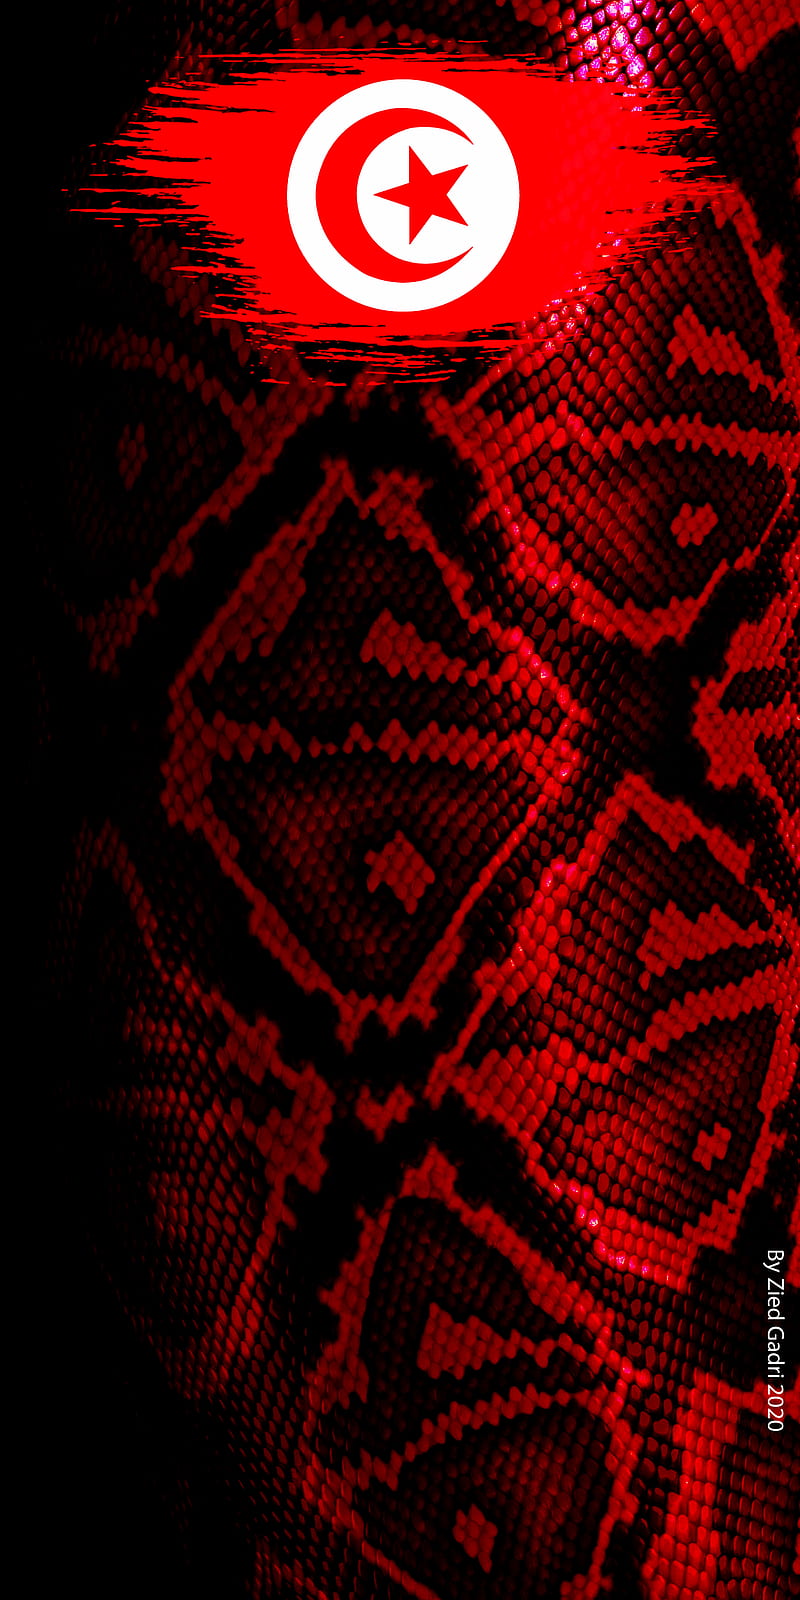 red snake skin wallpaper